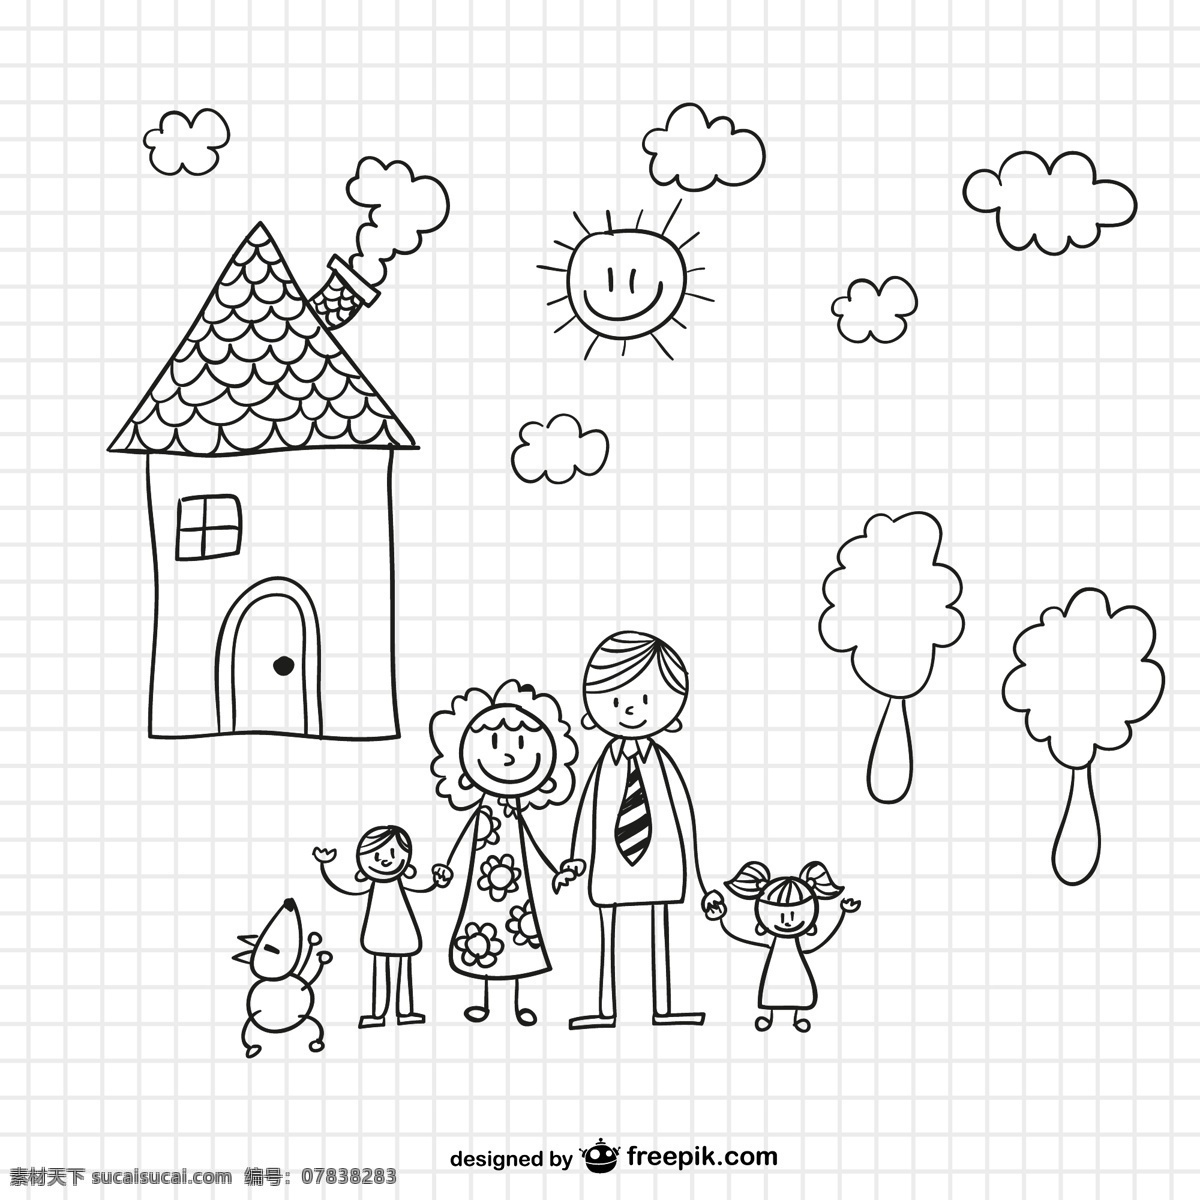 手绘 家庭 插画 矢量 素描 云朵 矢量素材 一家三口 植物 水彩 儿童绘画